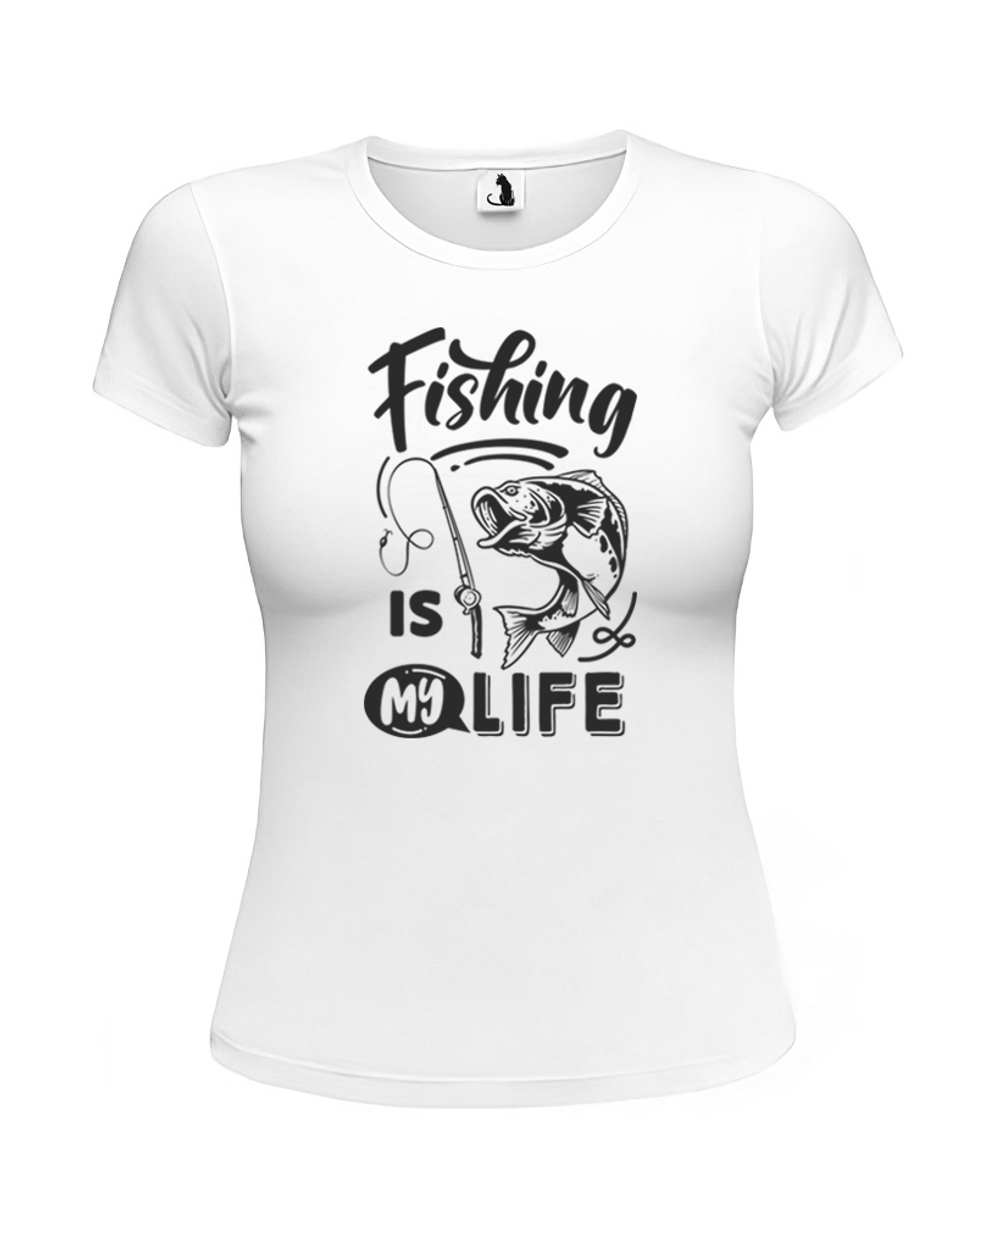 Футболка рыбака Fishing is my life женская приталенная белая с черным рисунком